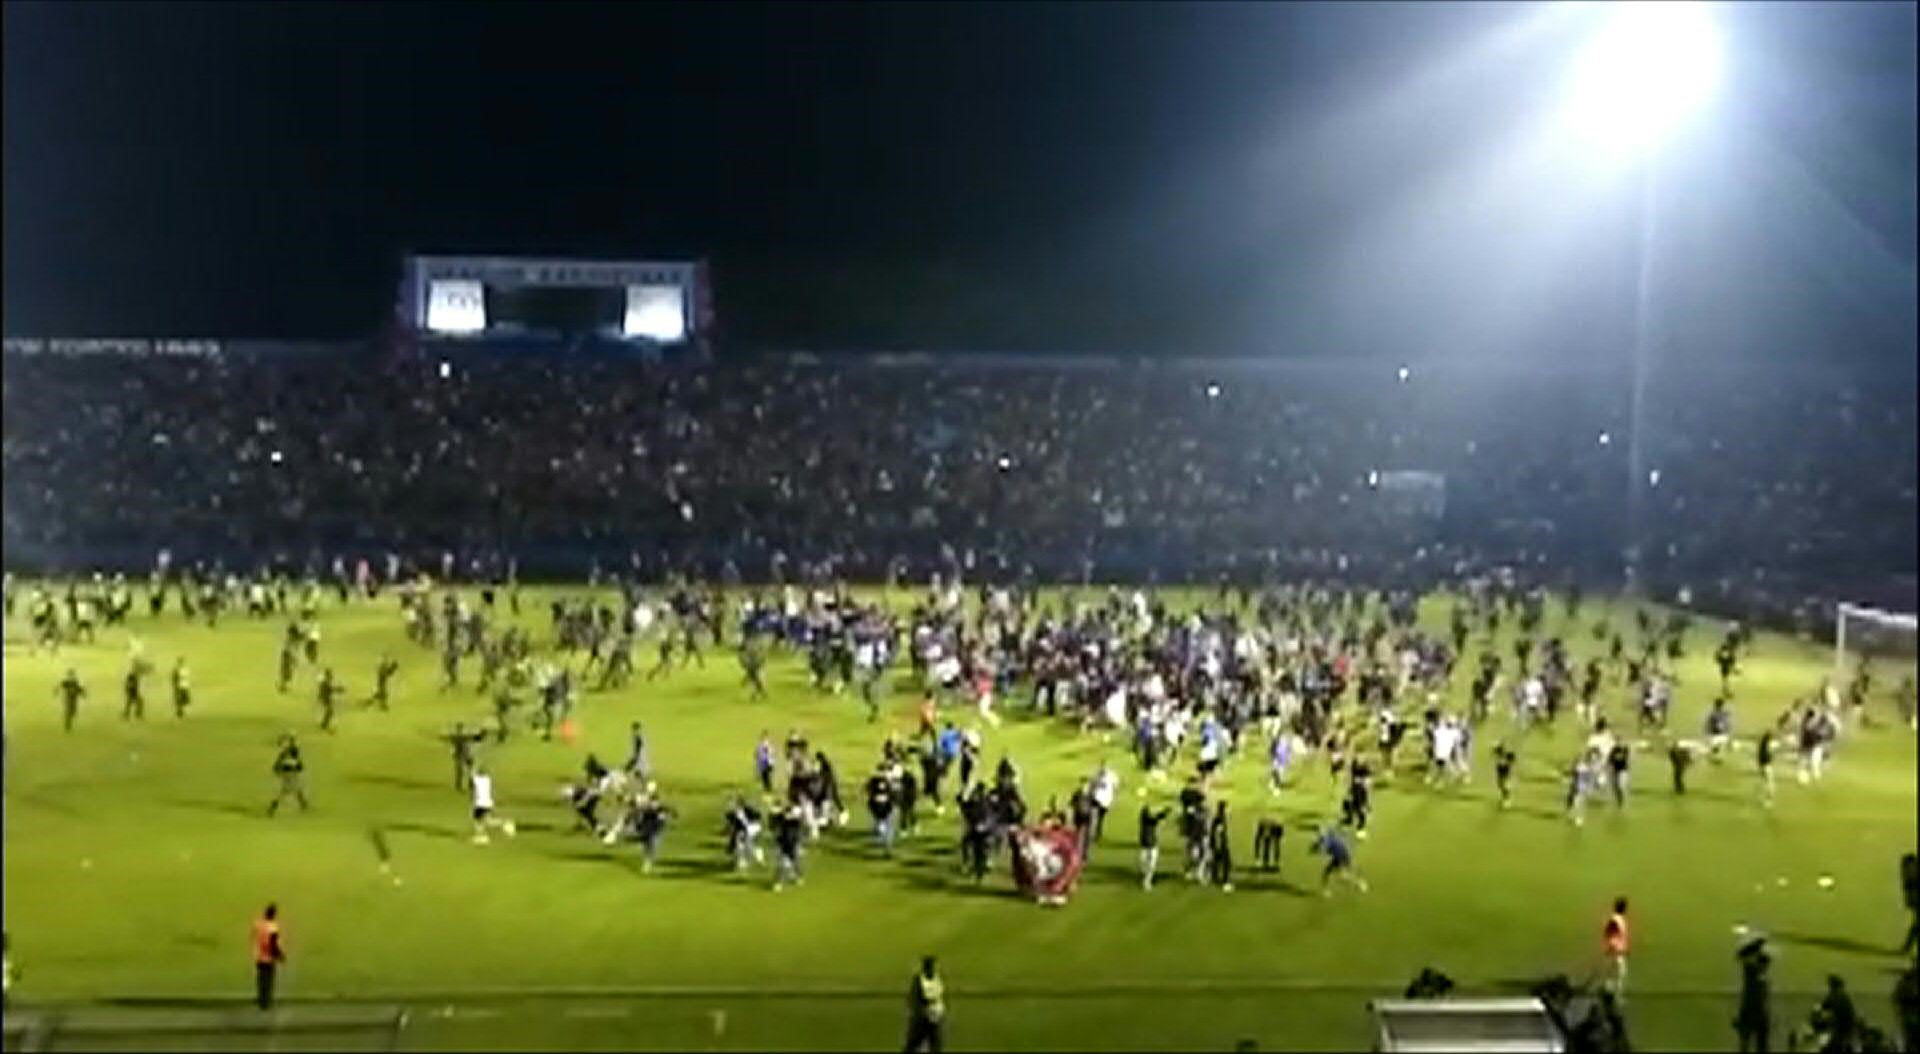 Más de un centenar de personas murieron la noche del sábado en un estadio de Indonesia después de que fanáticos enardecidos invadieran la cancha y la policía respondiera con gases lacrimógenos, lo que provocó una estampida.